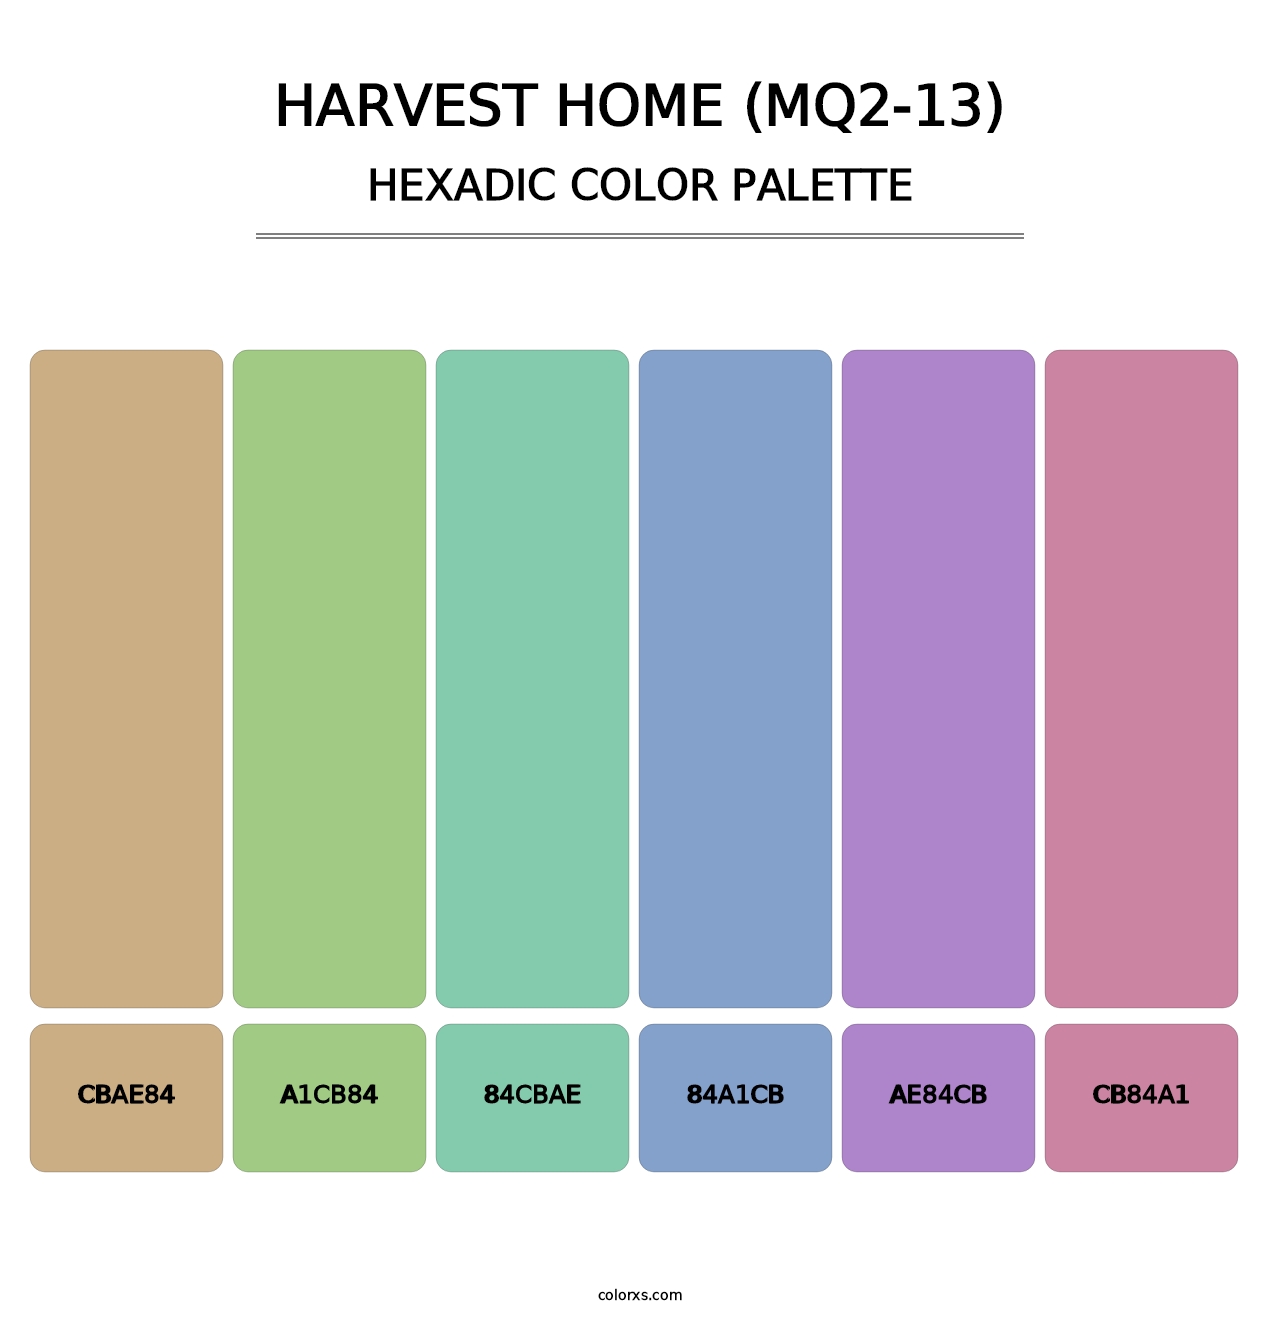 Harvest Home (MQ2-13) - Hexadic Color Palette